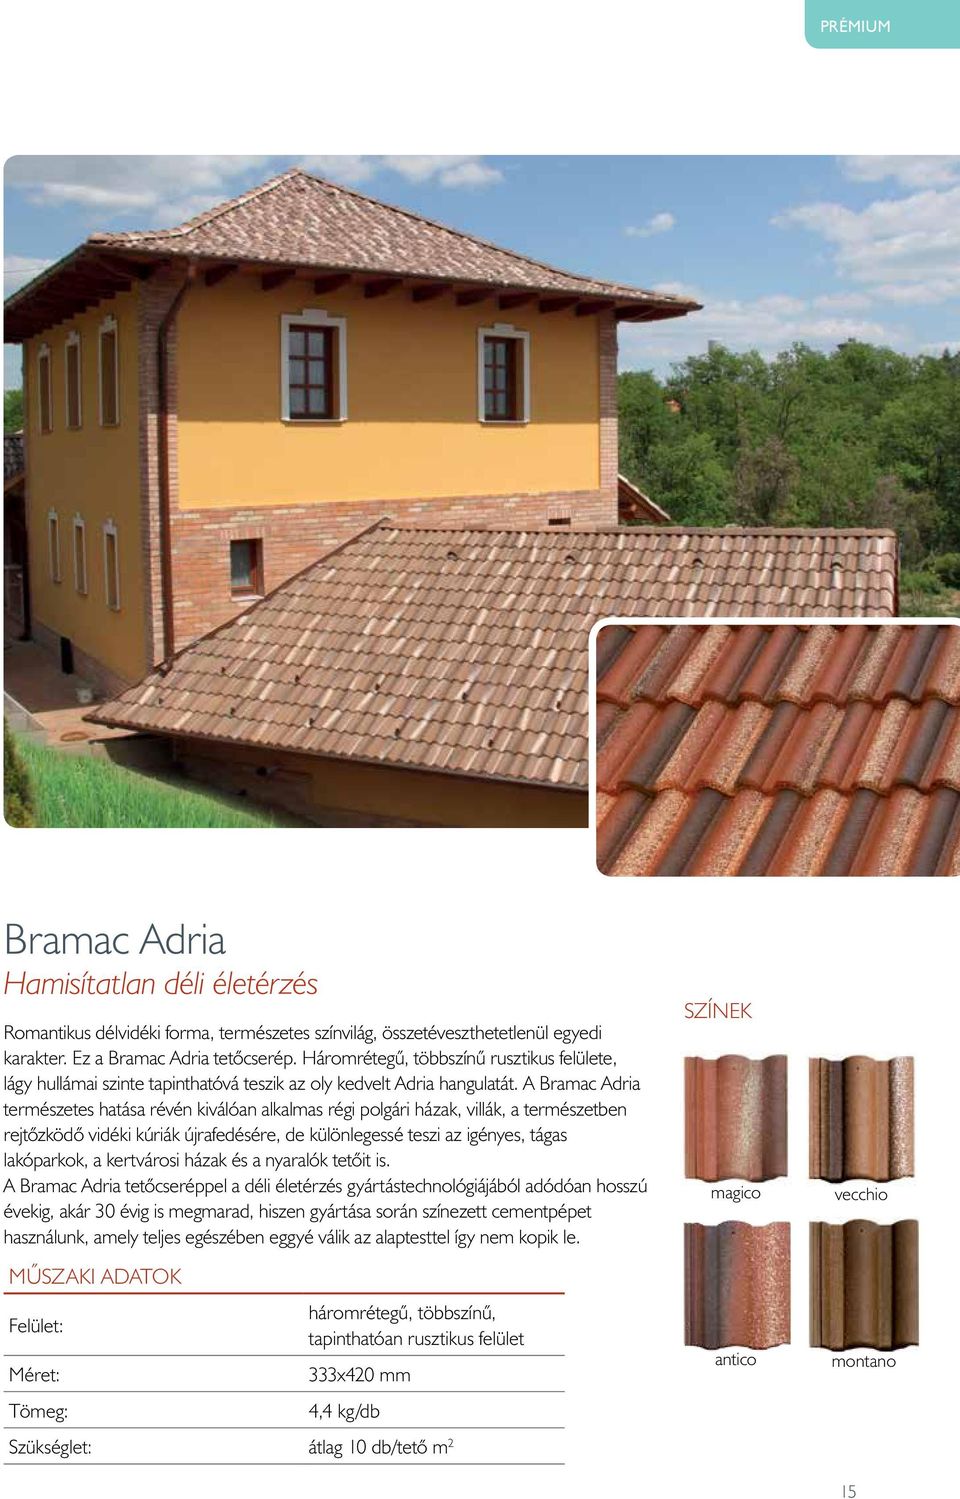 A Bramac Adria természetes hatása révén kiválóan alkalmas régi polgári házak, villák, a természetben rejtõzködõ vidéki kúriák újrafedésére, de különlegessé teszi az igényes, tágas lakóparkok, a